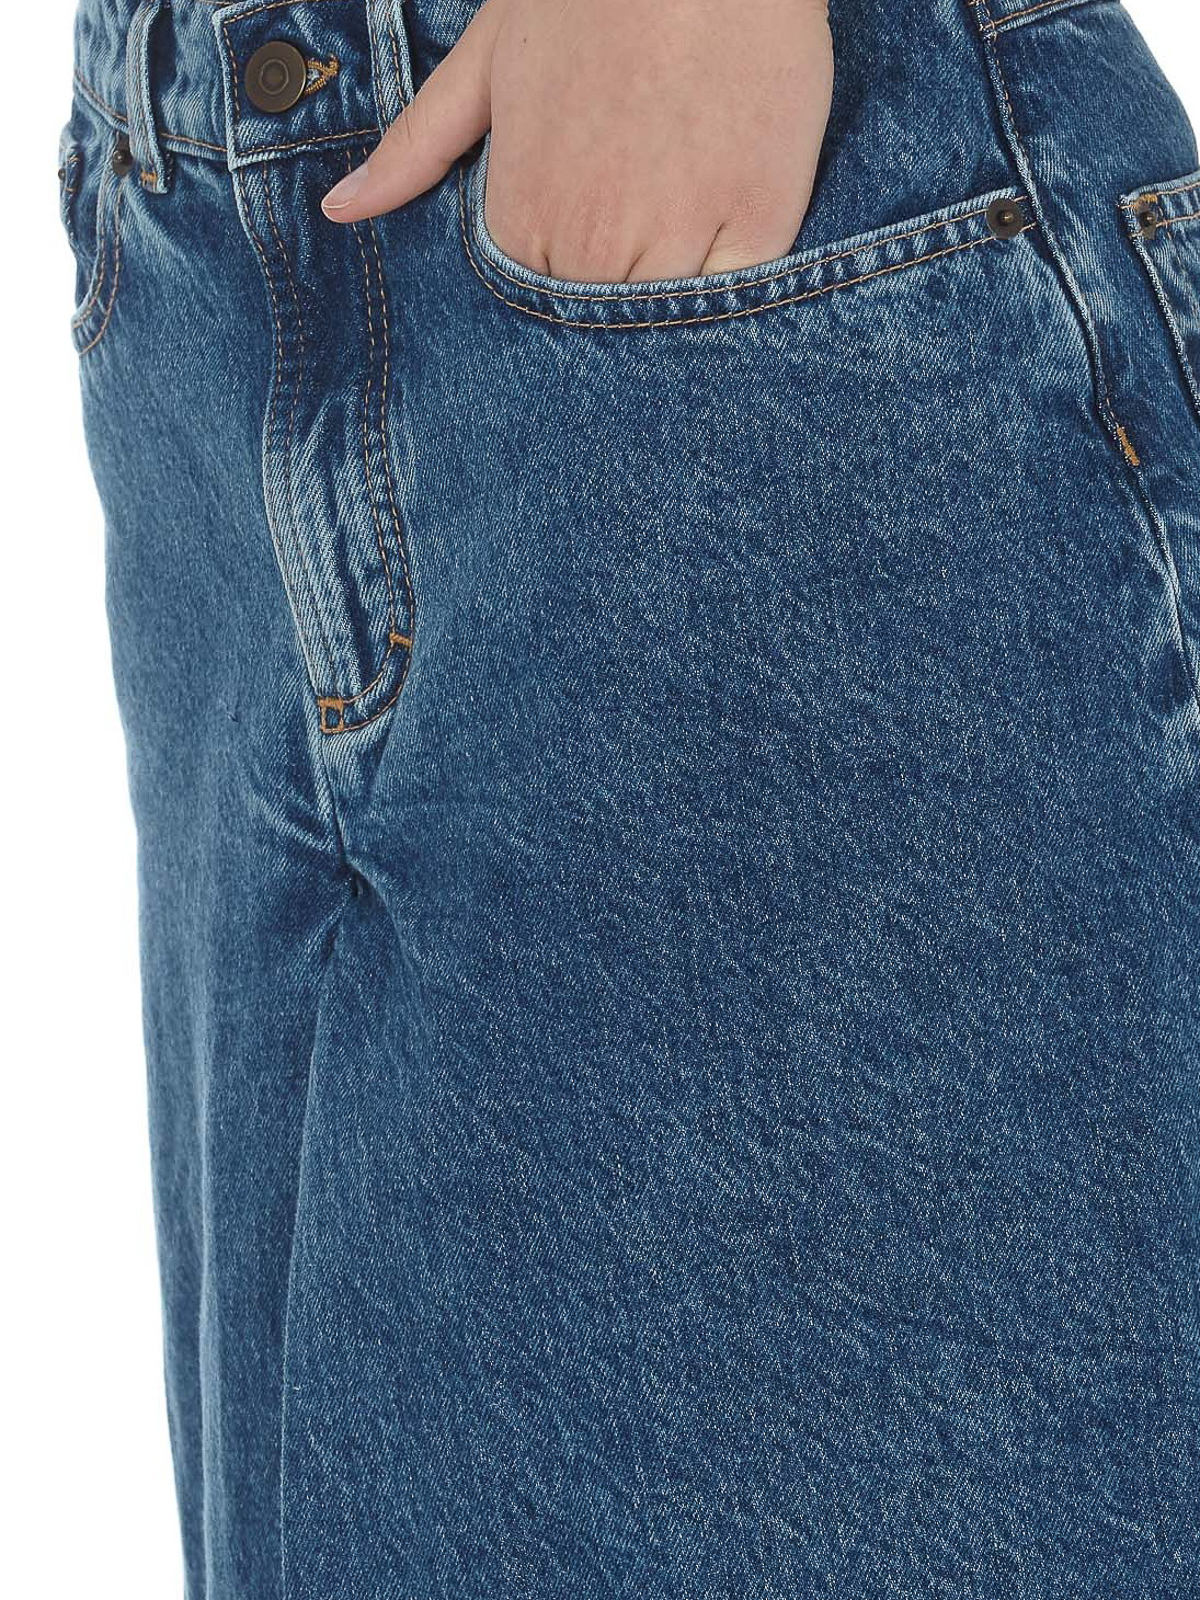 ramp speer Polijsten Flared jeans Maison Margiela - Spliced culotte jeans - S51MA0446S30744961